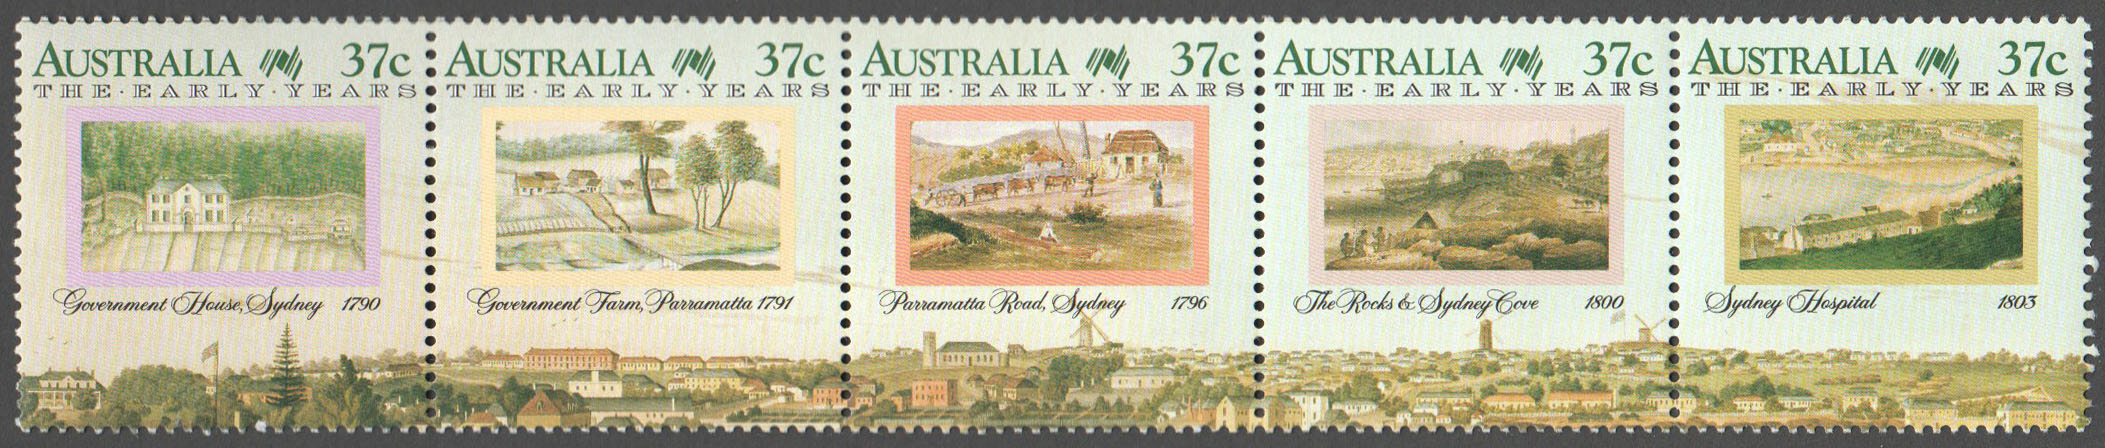 Australia Scott 1031 MNH (A2-12)